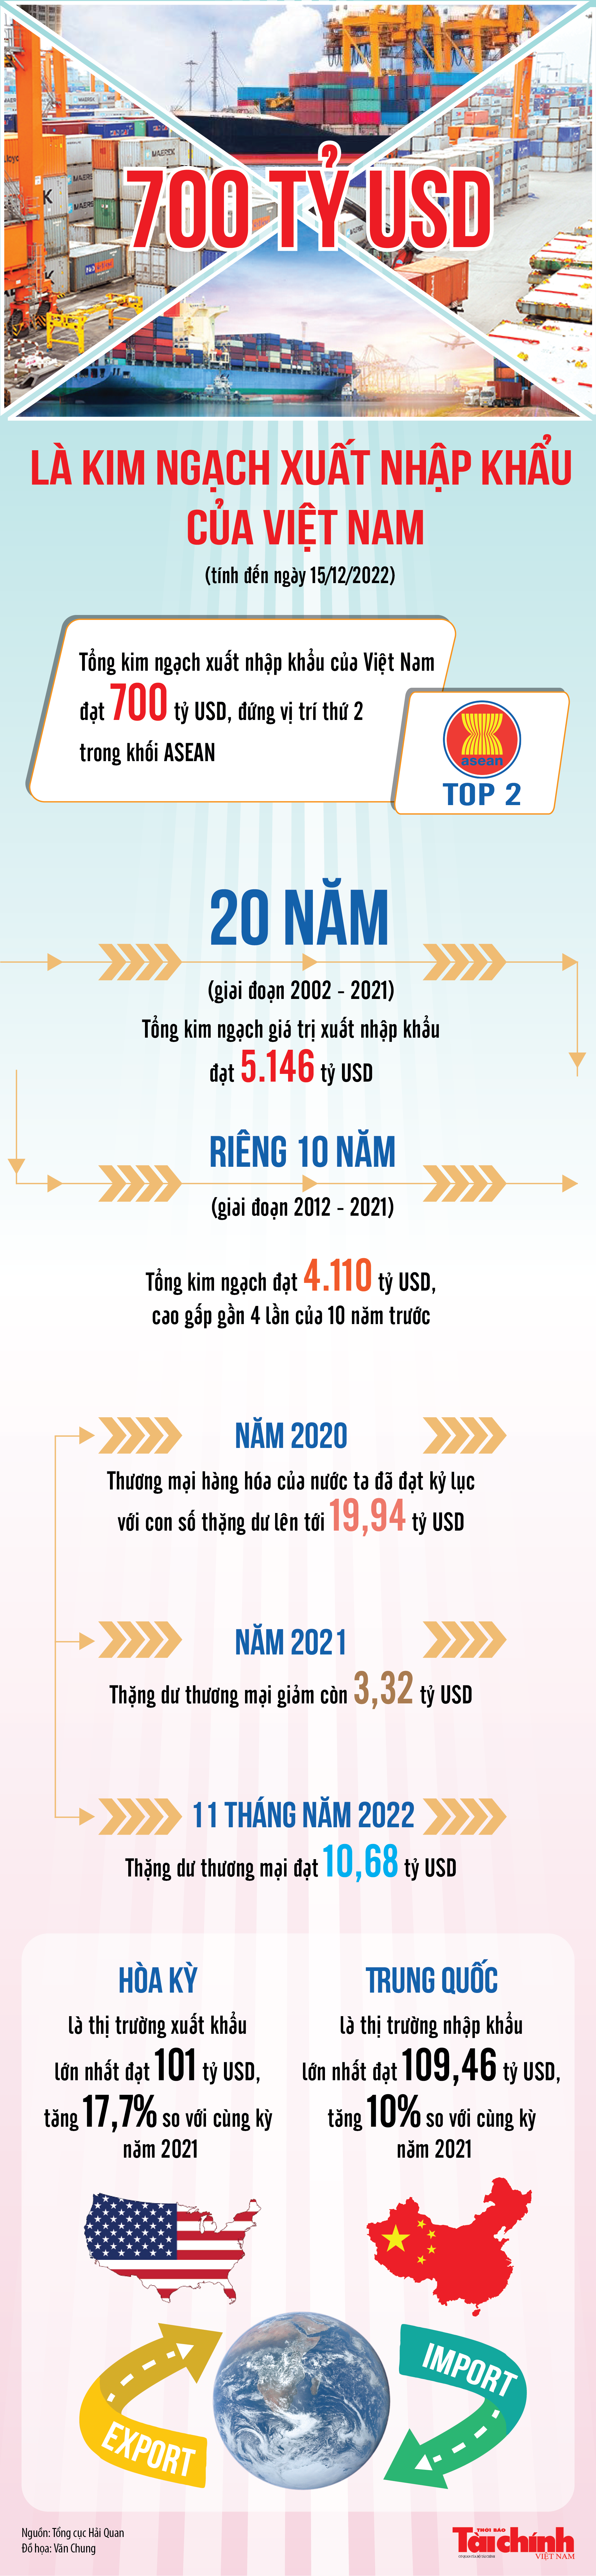 Infographics: Kim ngạch xuất nhập khẩu của Việt Nam đạt 700 tỷ USD